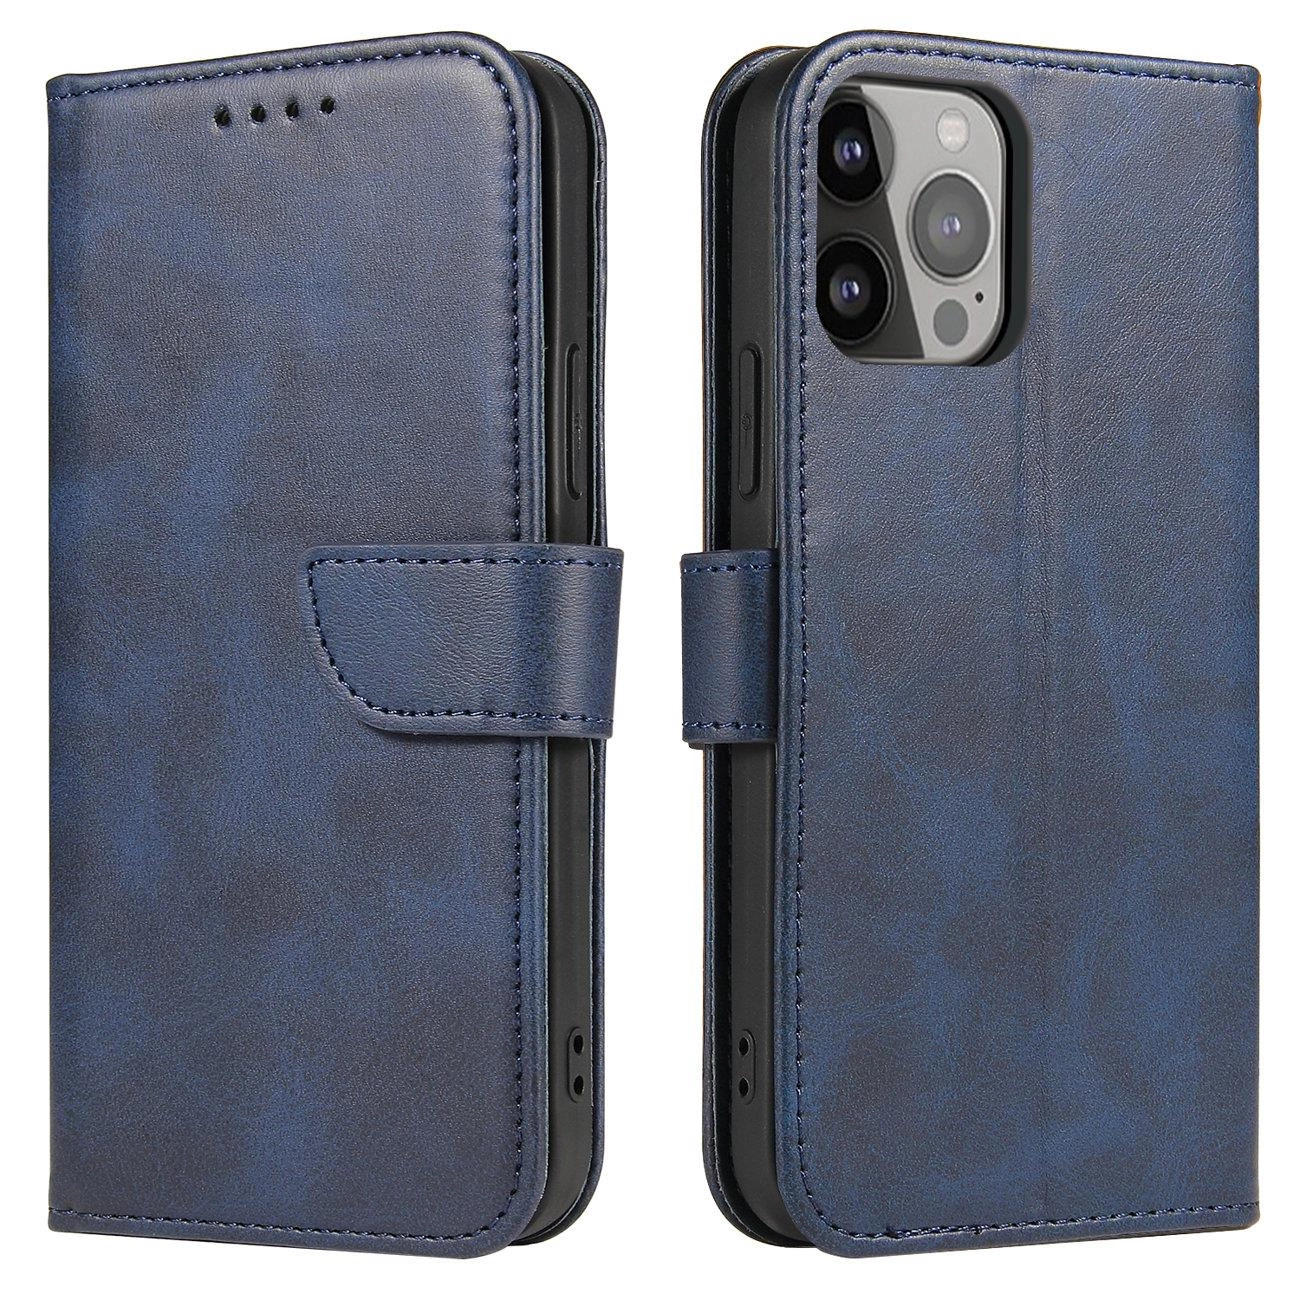 Hurtel Magnetové pouzdro iPhone 14 Pro Max s flipovým krytem, peněženkovým stojánkem modré barvy